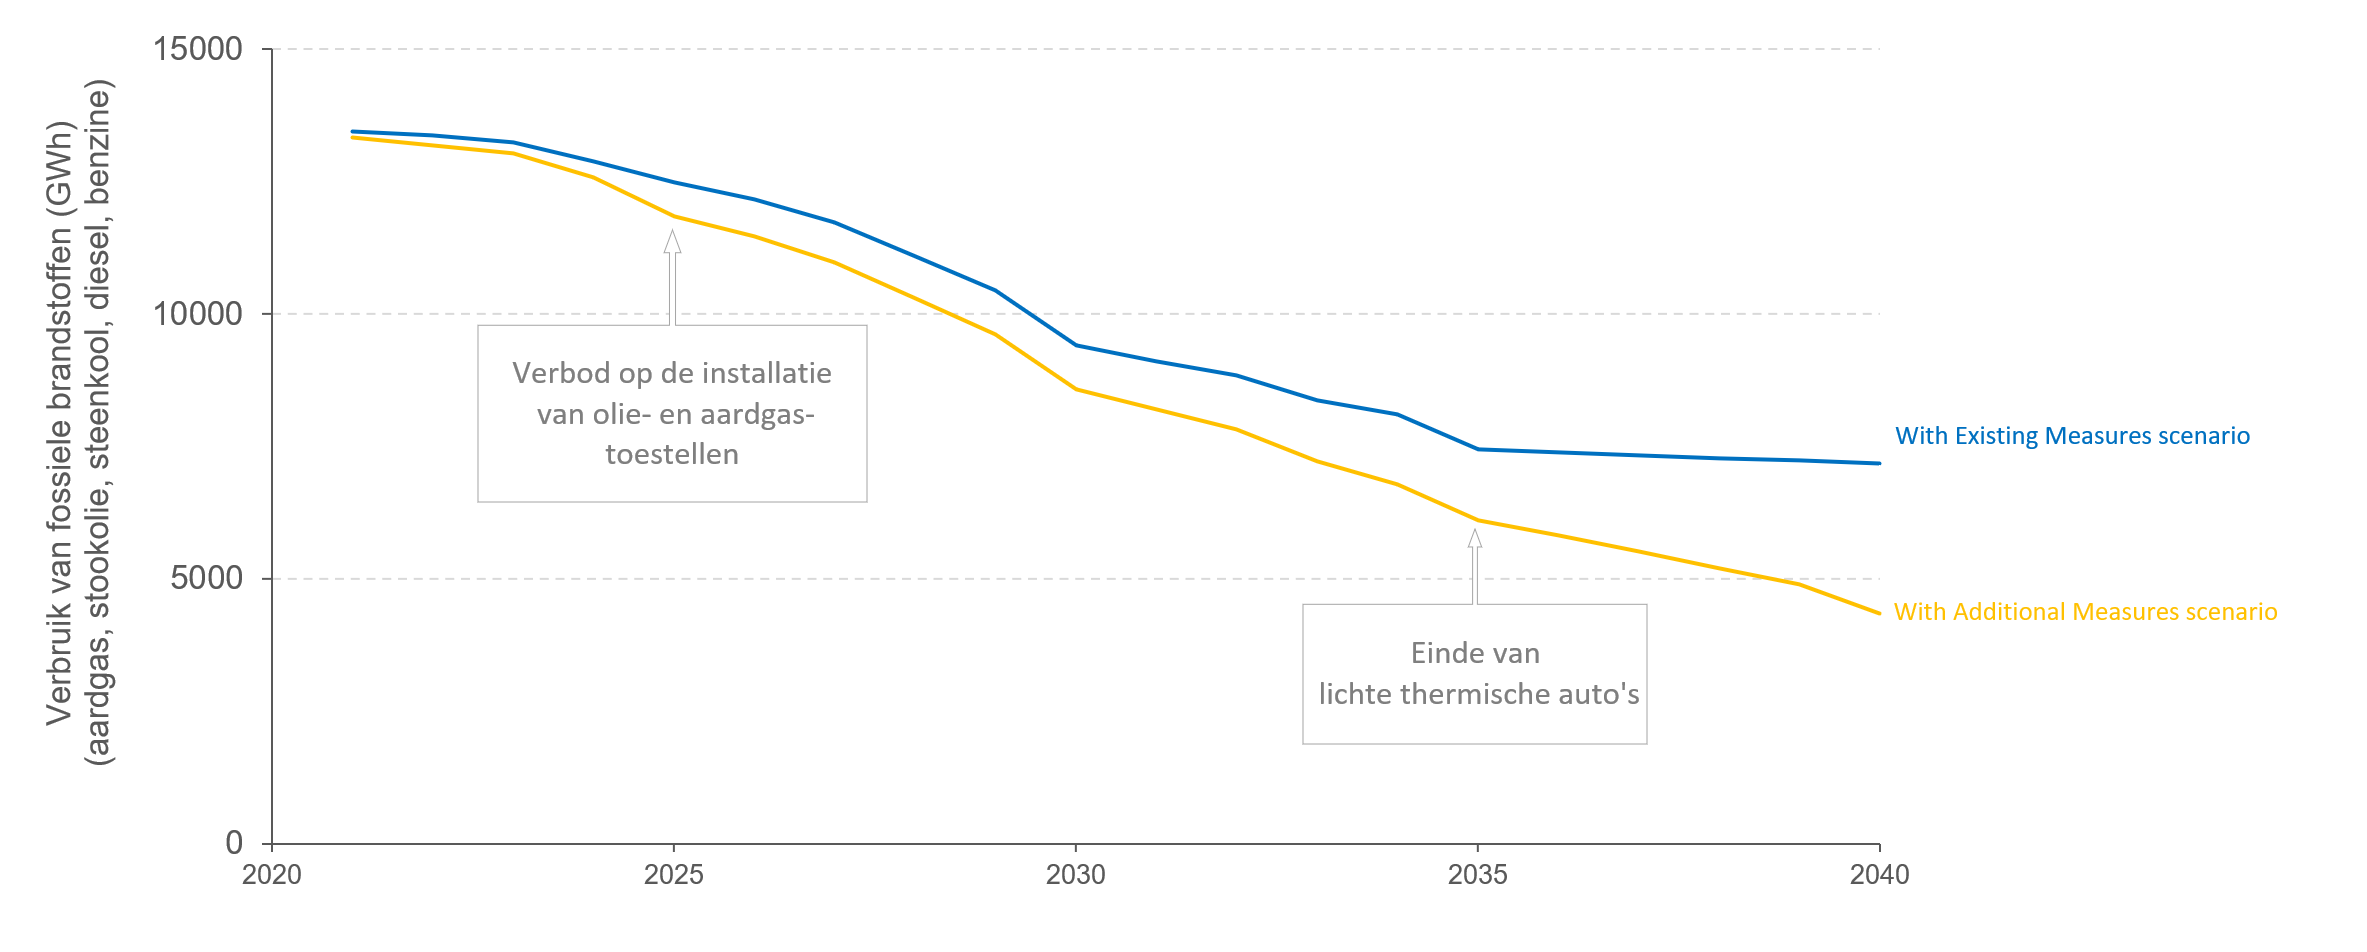 Dalende trend in het gebruik van fossiele brandstoffen tegen 2040